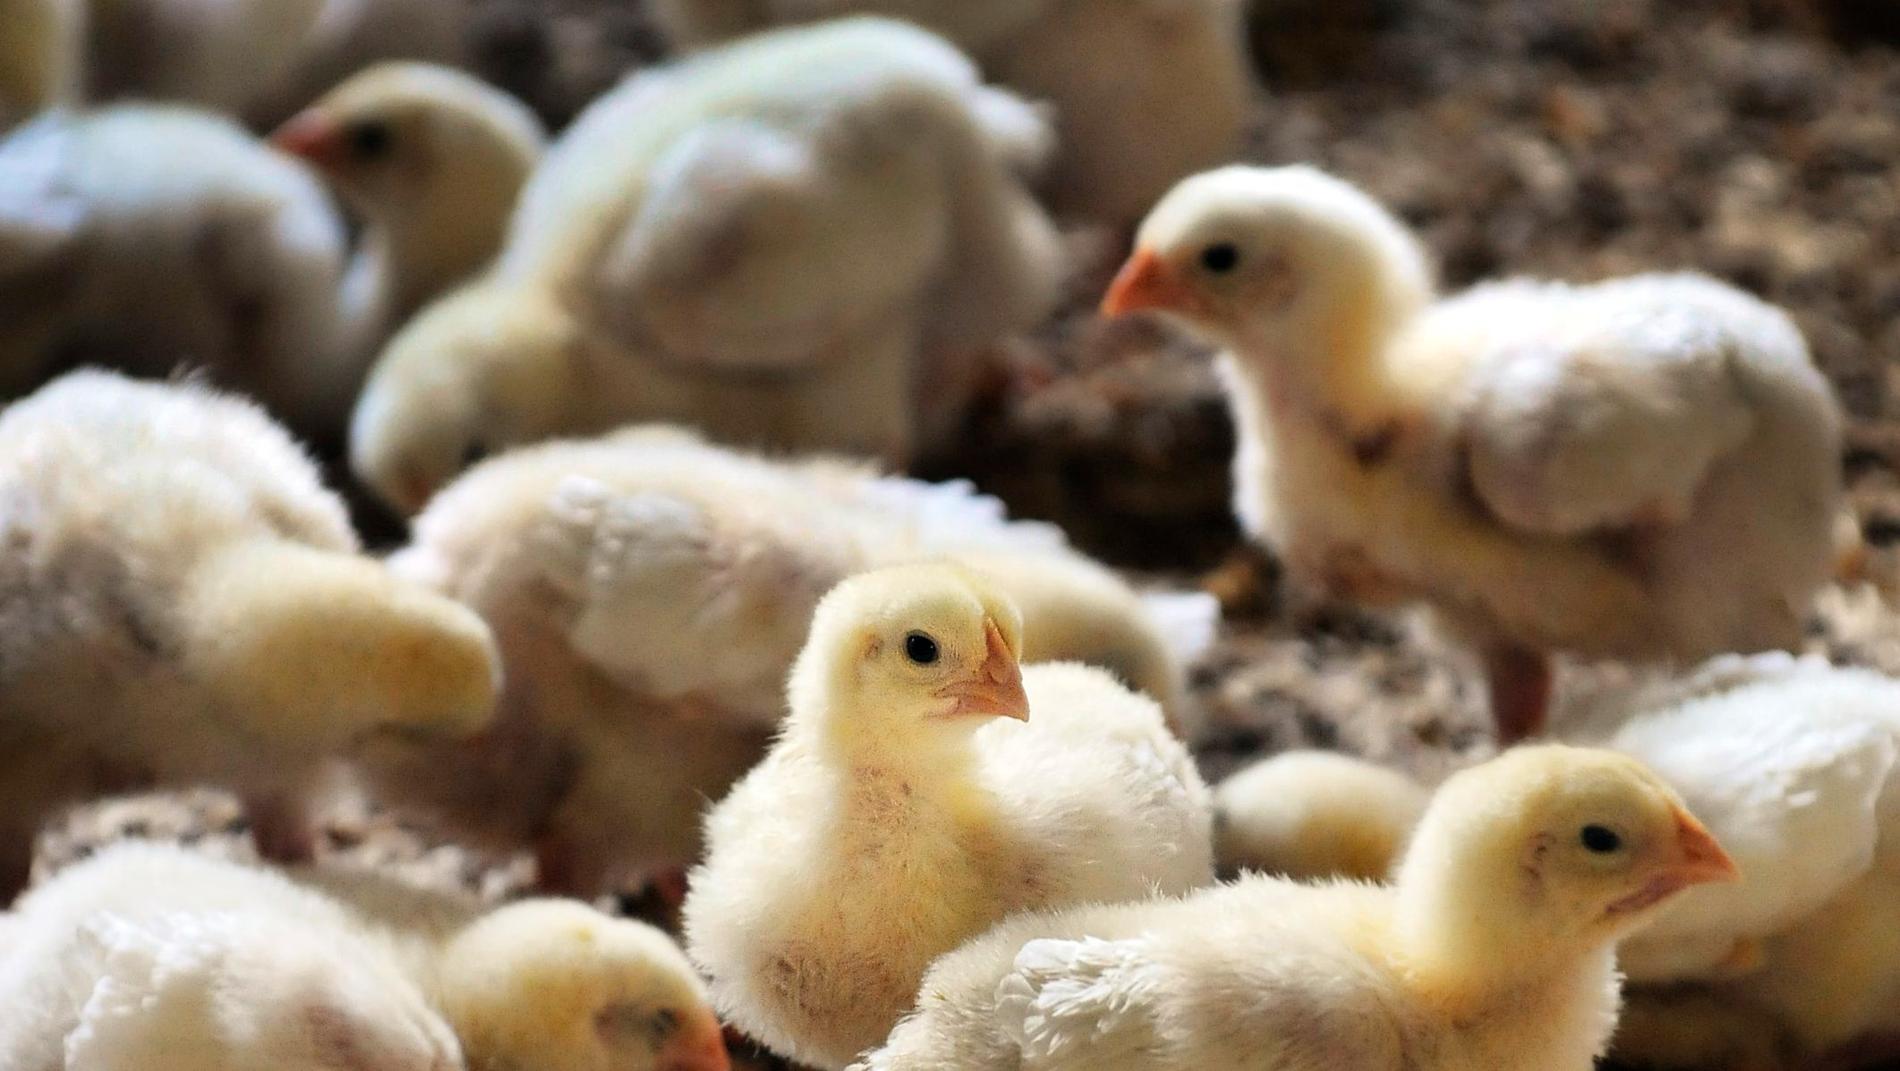 Guldfågeln åtalsanmäls av Livsmedelsverket efter att kycklingar skållats levande. Arkivbild.